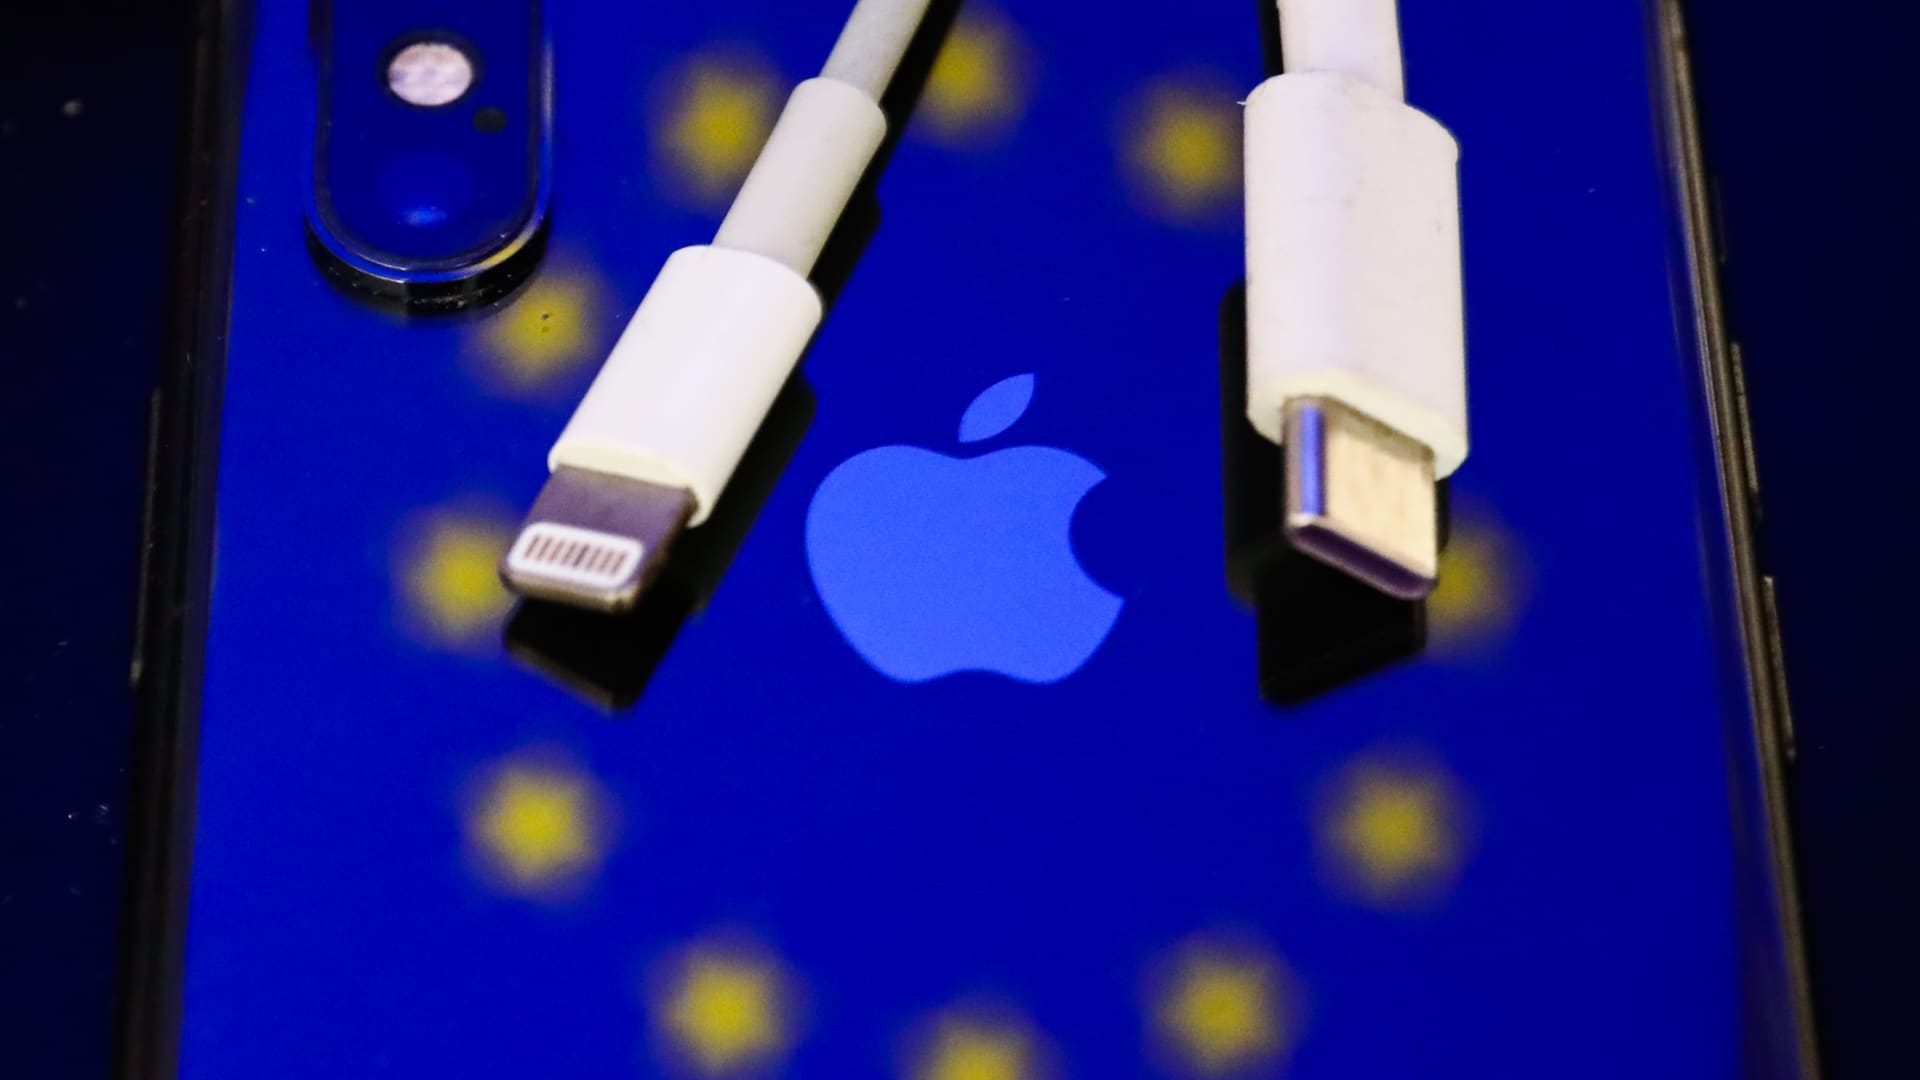 Apple conferma che iPhone riceve la ricarica USB-C per conformarsi alla legge dell’UE